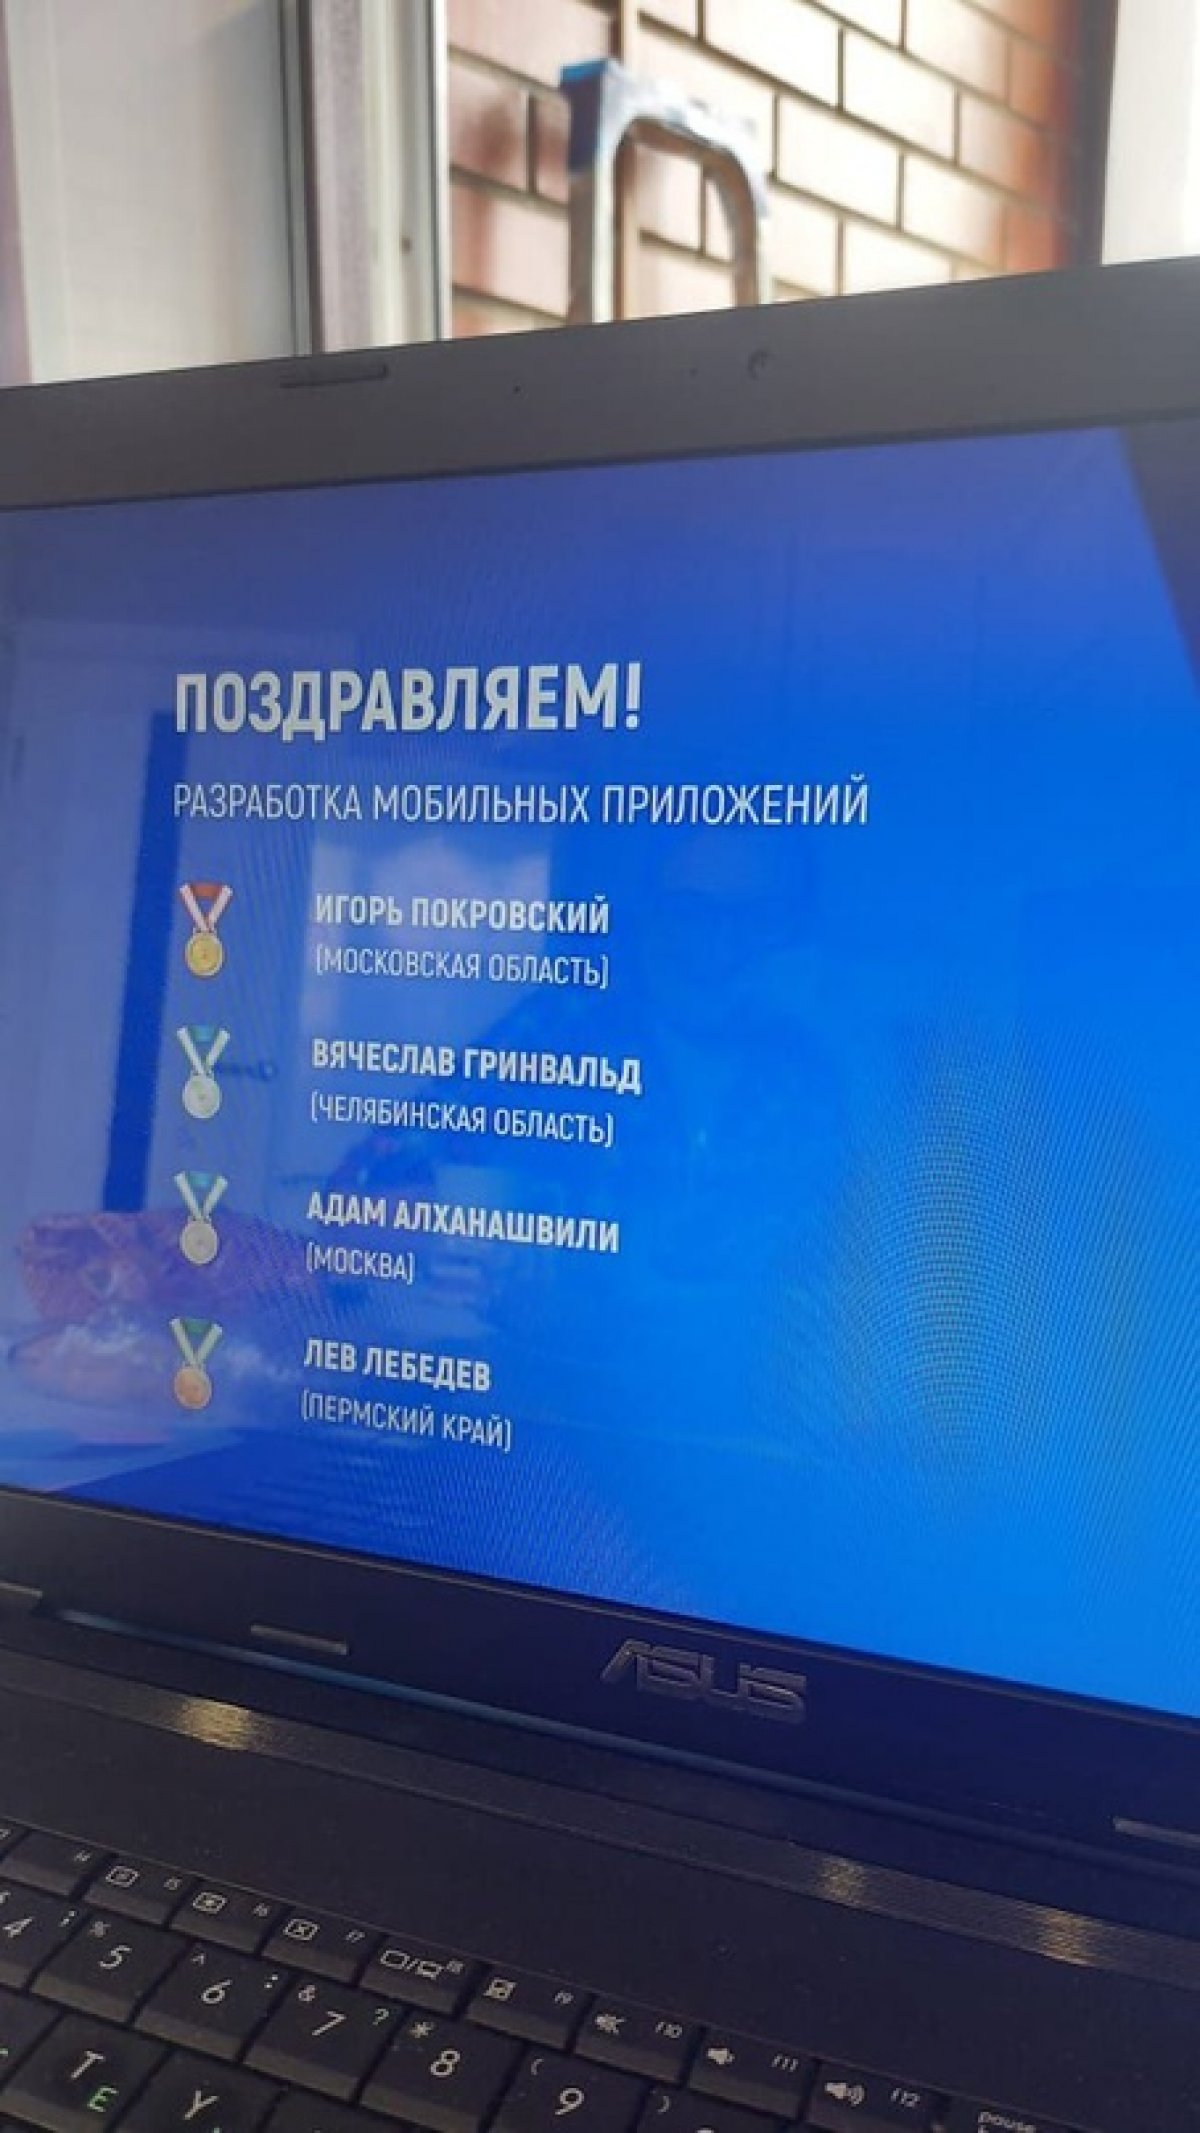 🥇Золото в финале национального чемпионата WorldSkills Russia в категории Разработка мобильных приложений!!!